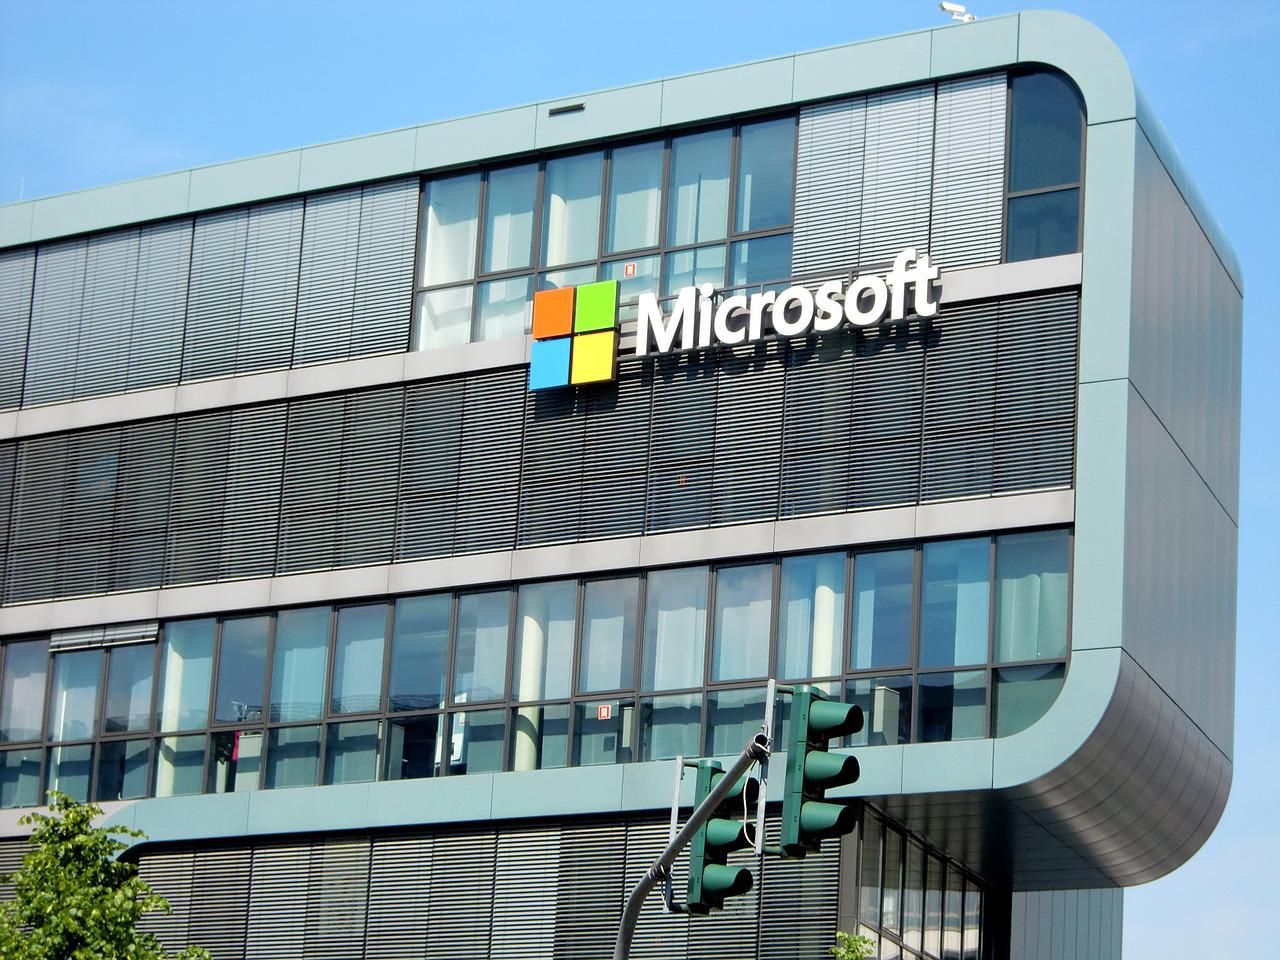 Microsoft logó egy nagy épületen közlekedési lámpákkal az előtérben